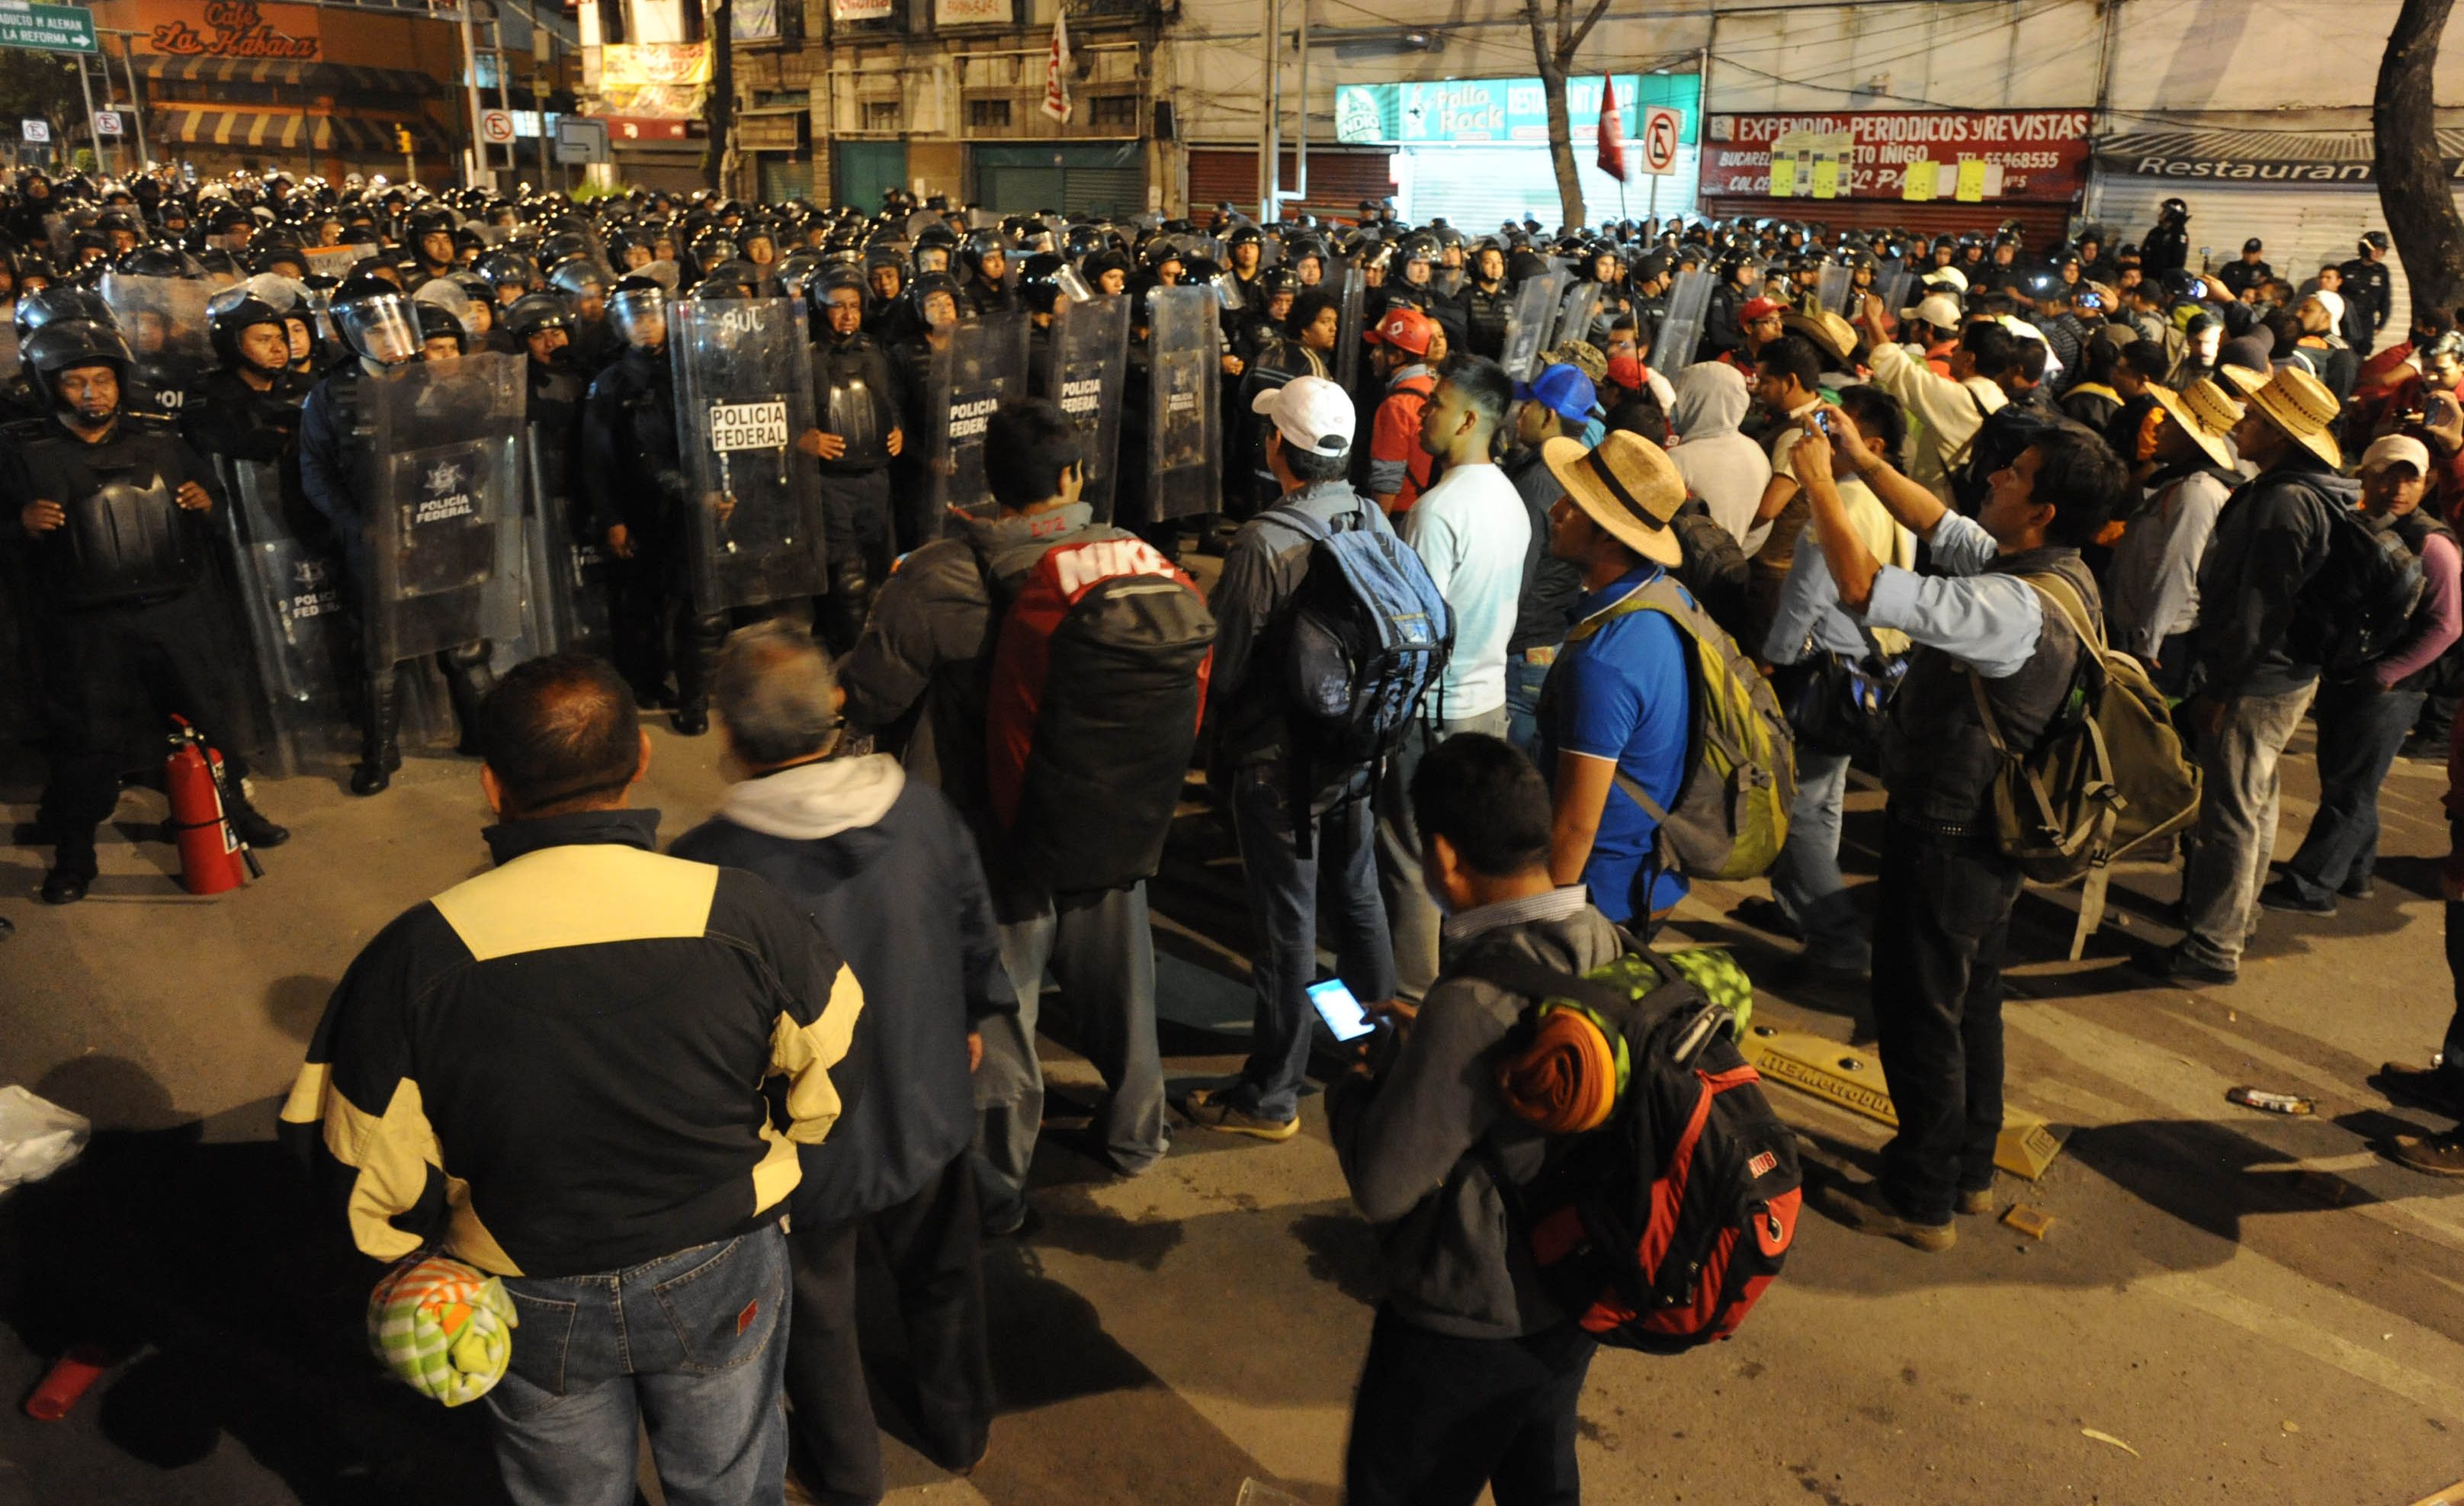  Maestros no temen a intervención policíaca, dice CNTE